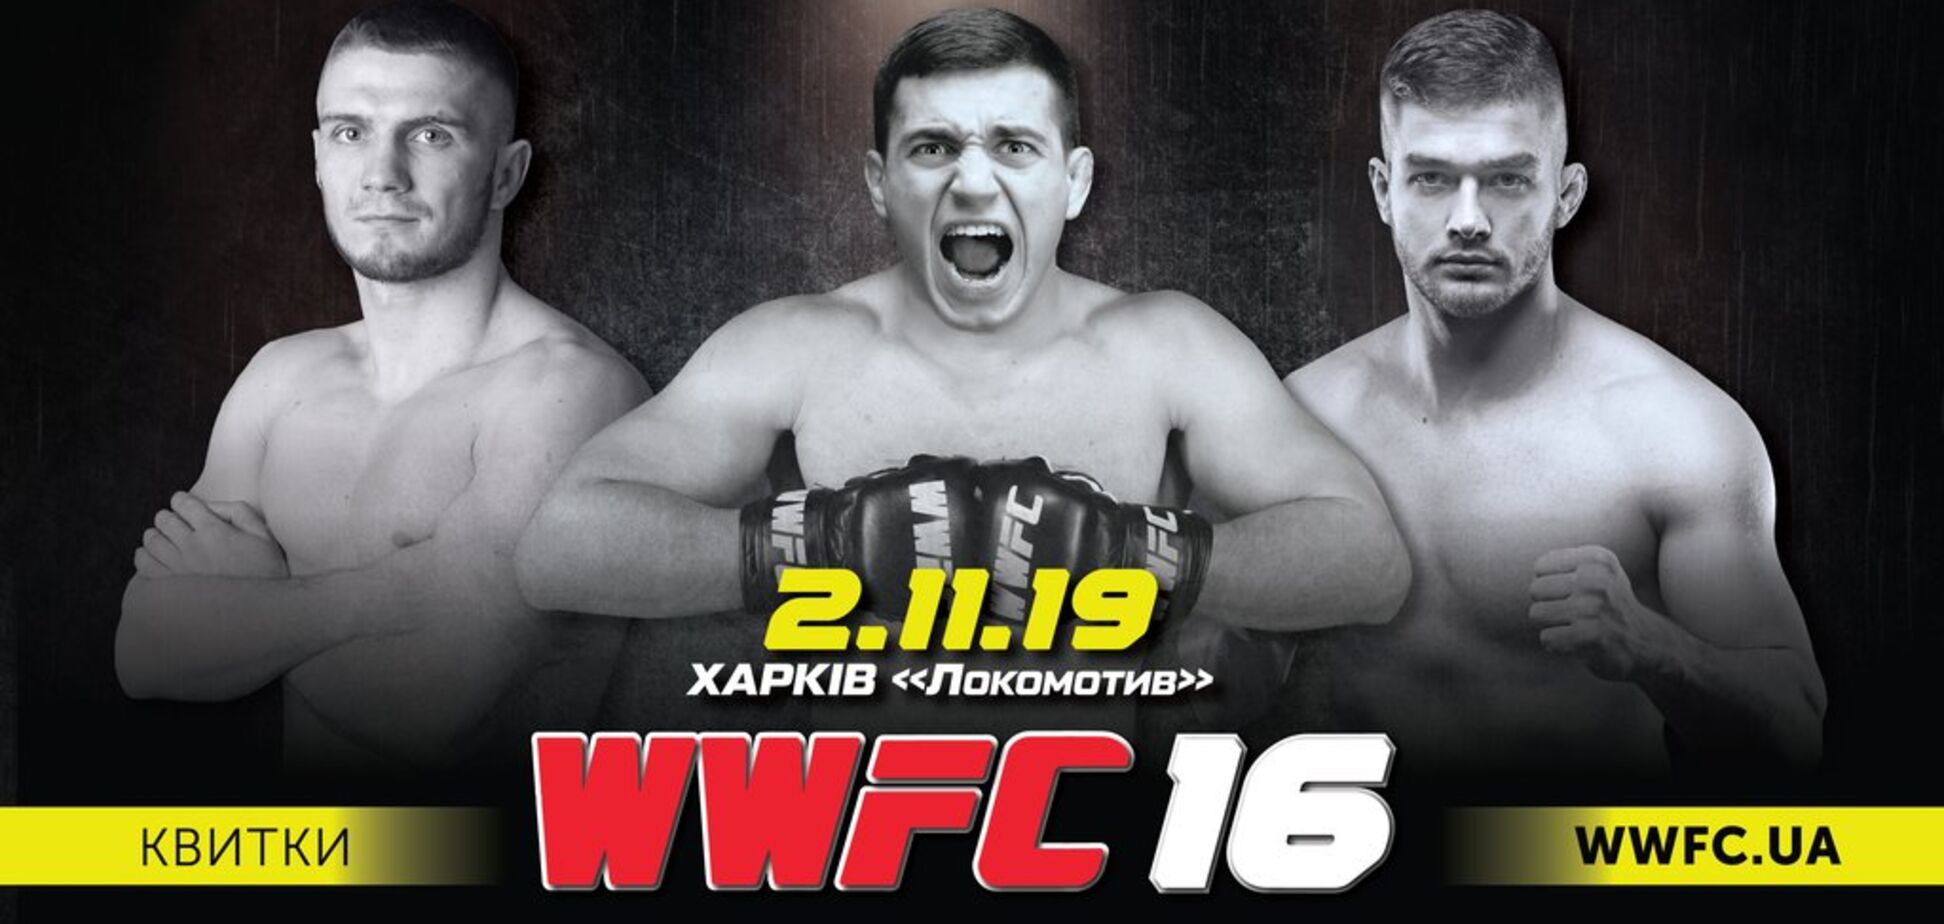 Лига WWFC впервые в Харькове проведет международный турнир по ММА